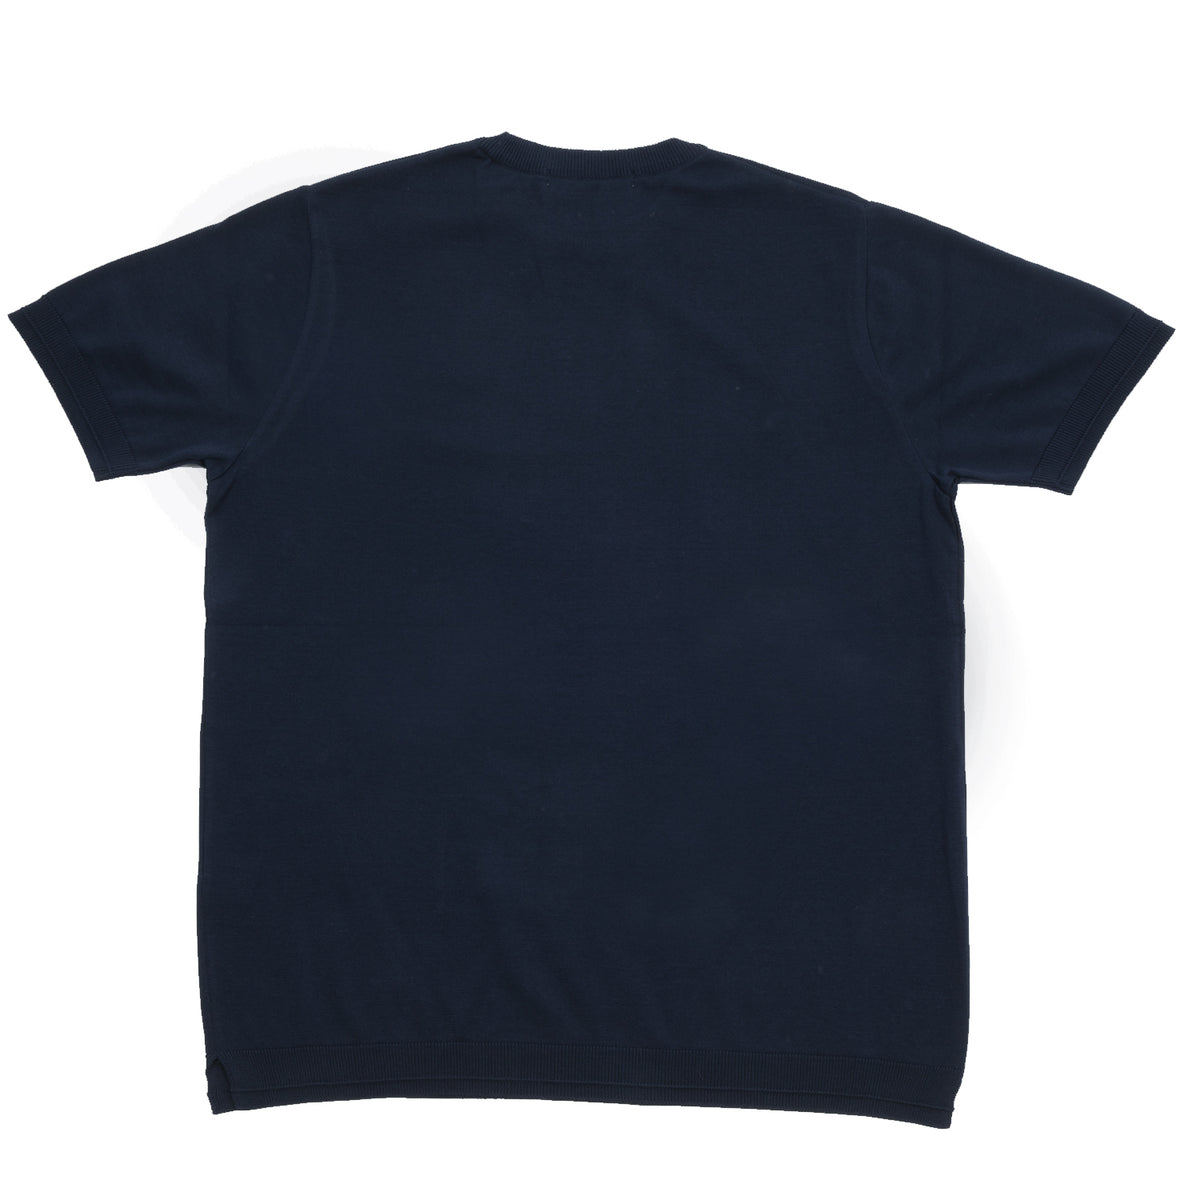 Fujito - Knit T-Shirt - Navy